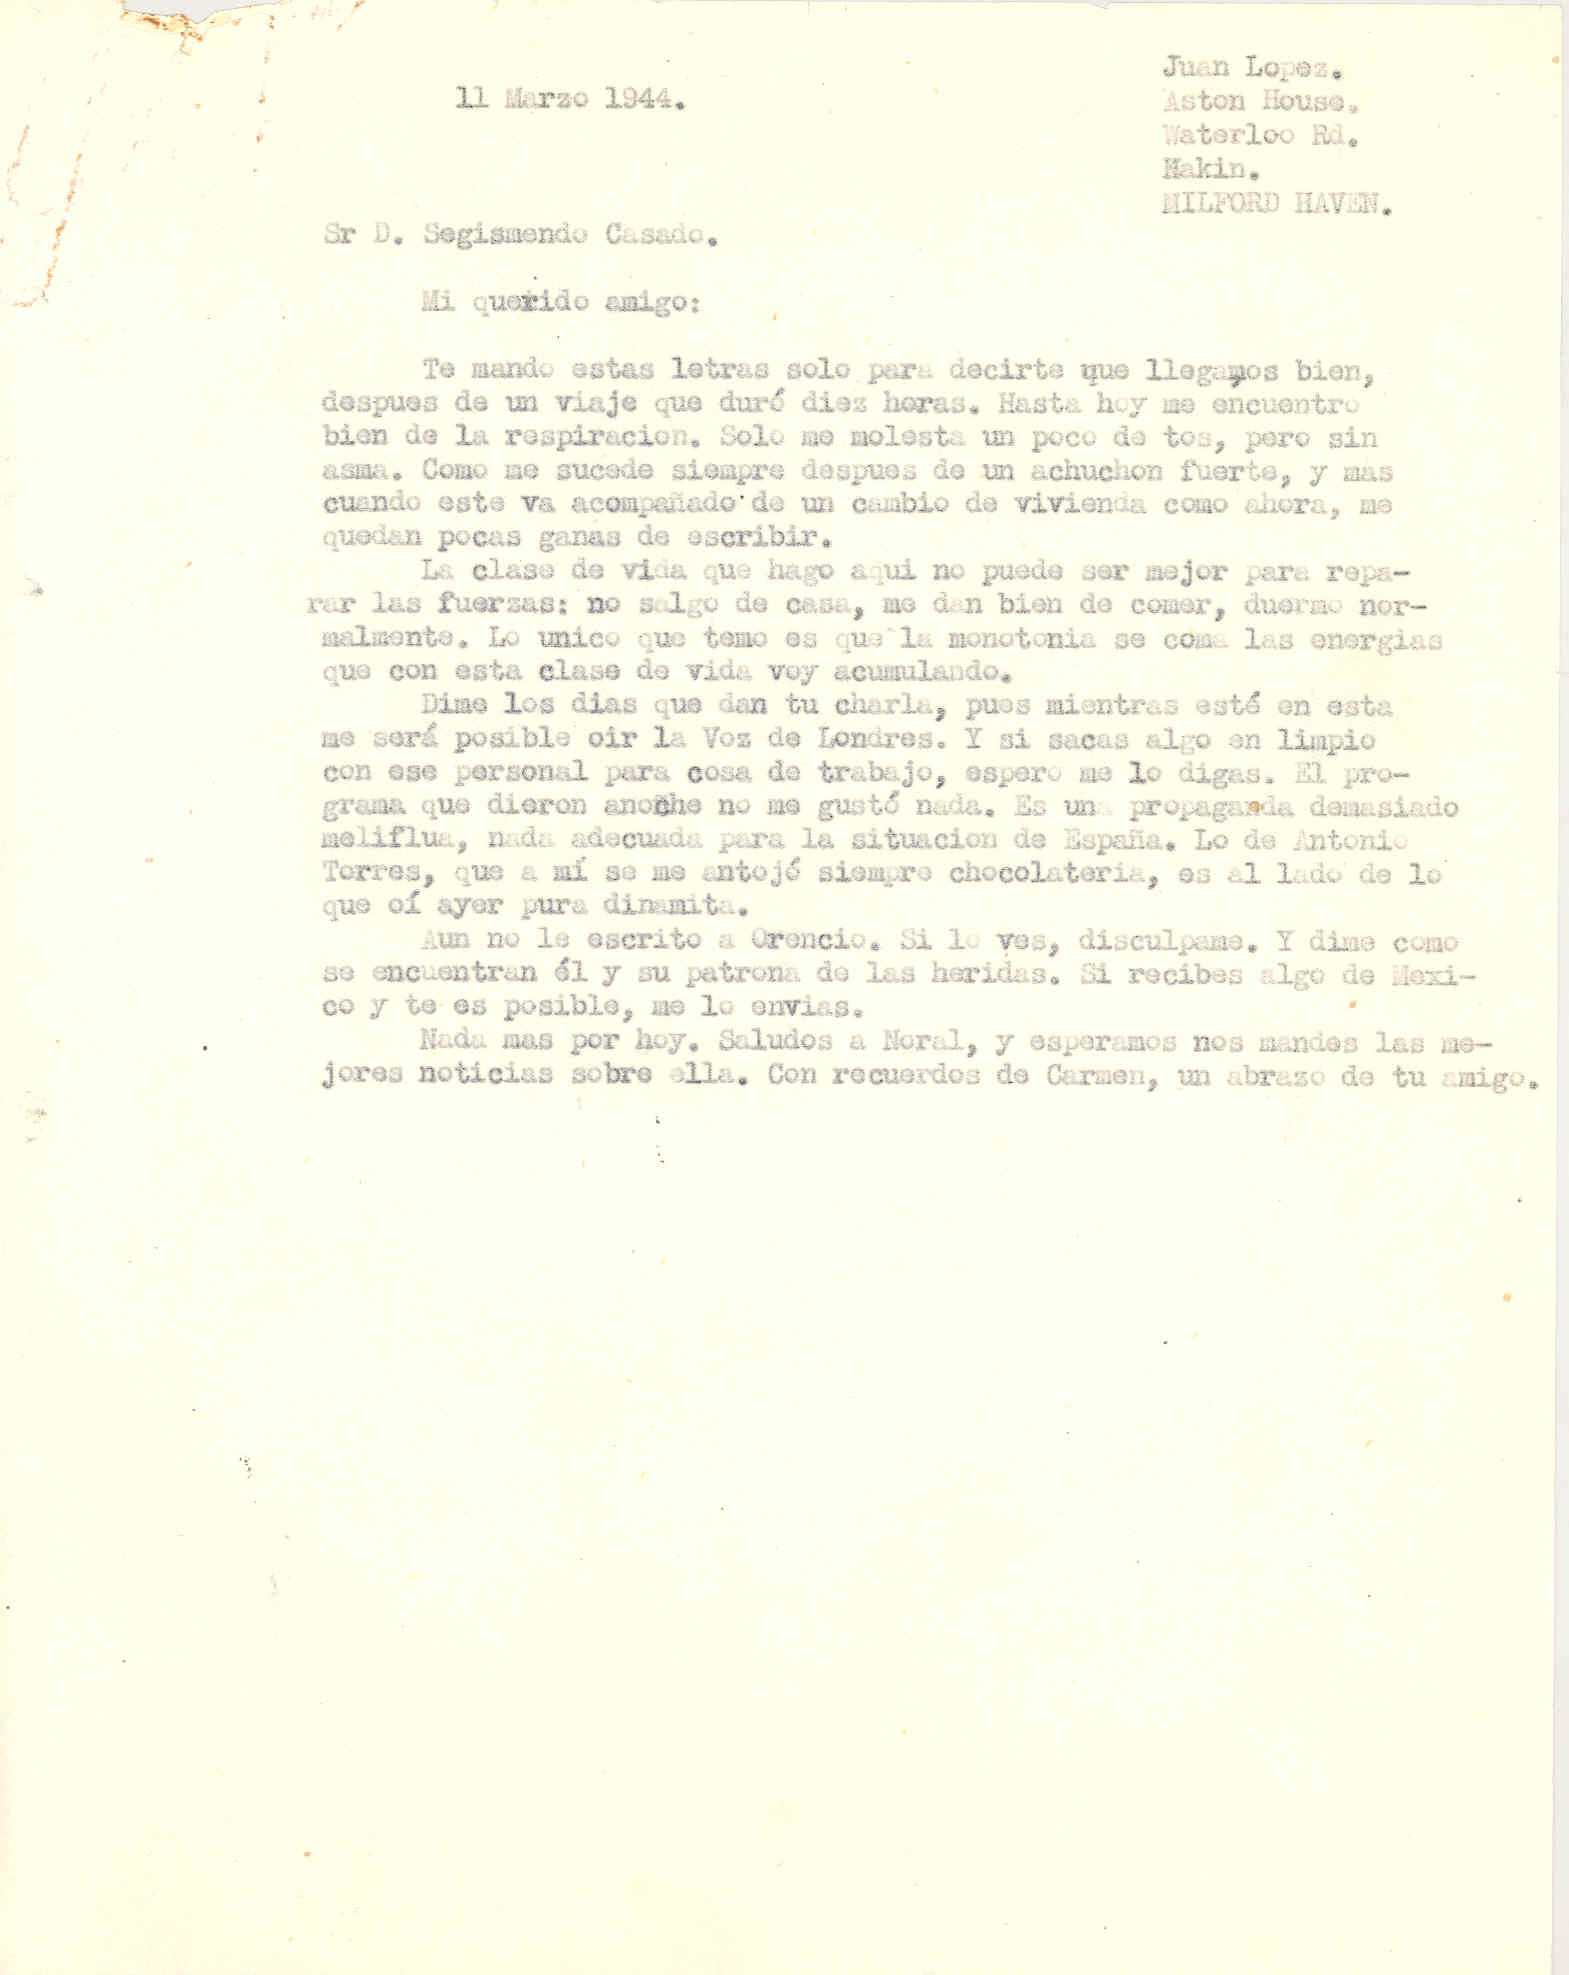 Carta a Segismundo Casado comentando su llegada a Milford Haven y un programa de radio que escuchó ayer.